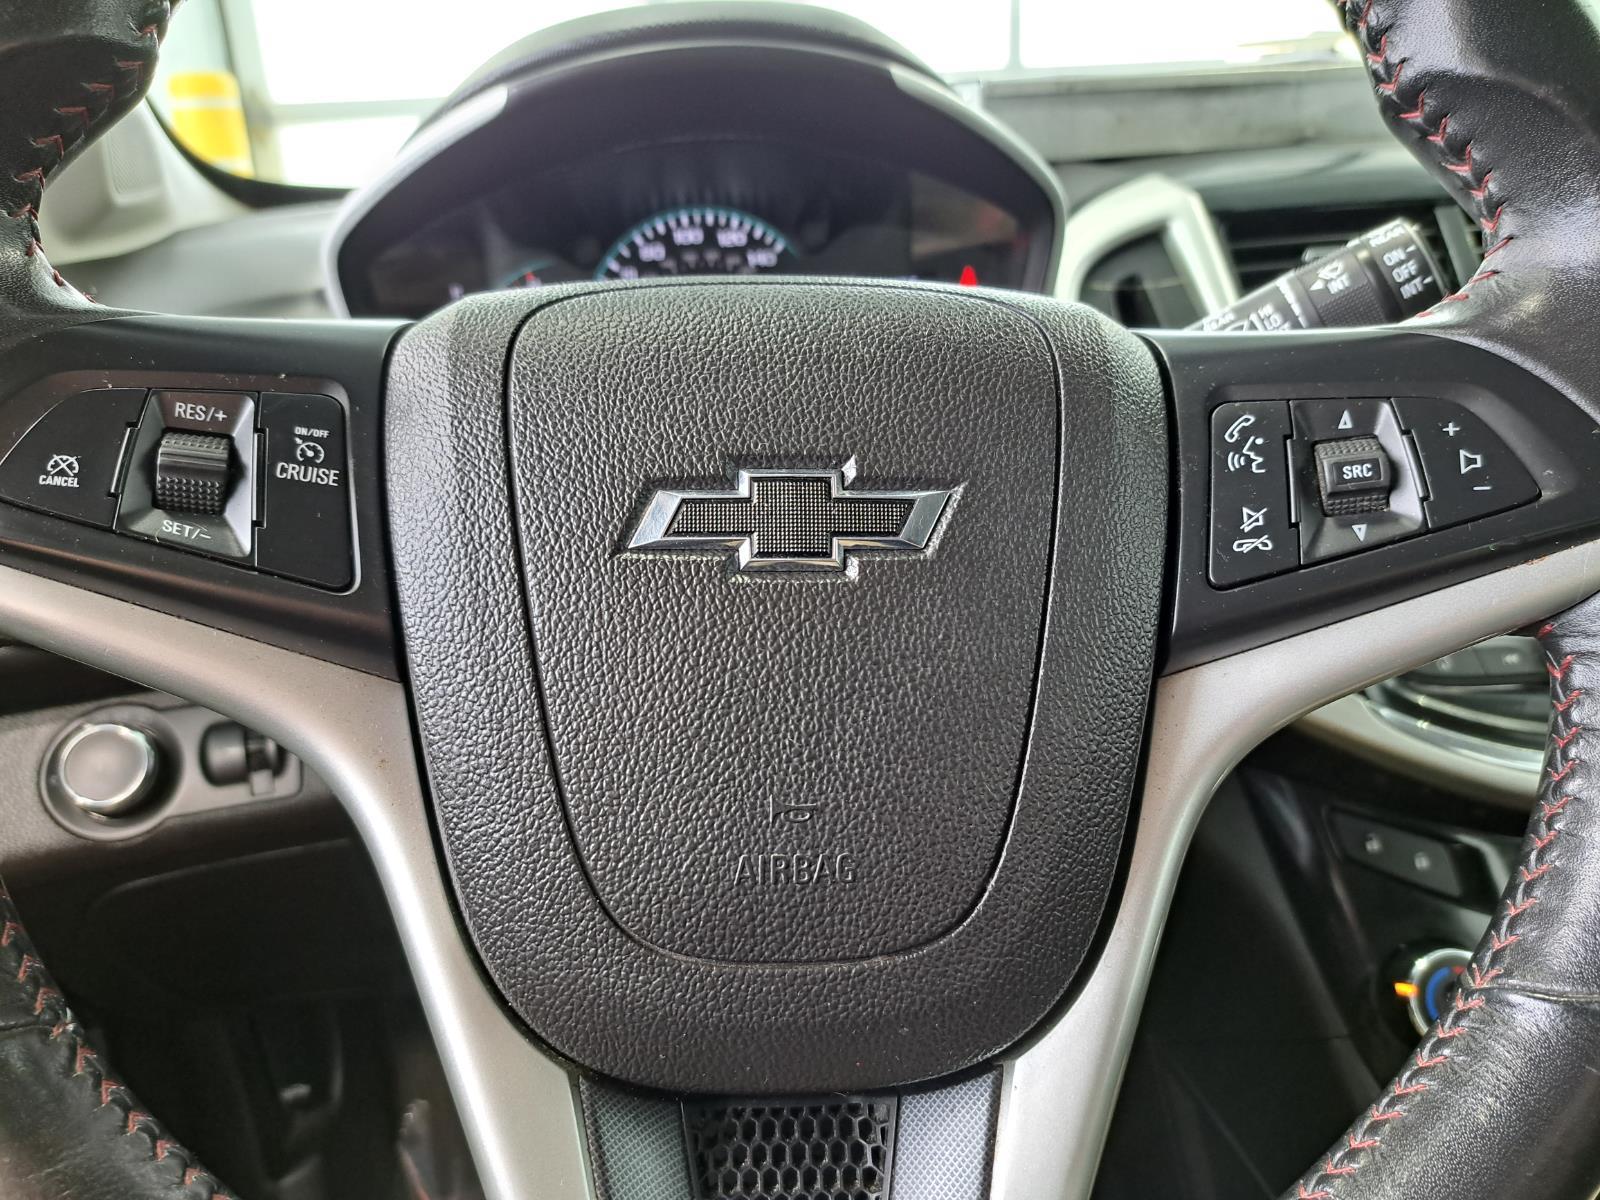 2019 Chevrolet Sonic LT Sedan 5 Dr. Front Wheel Drive mobile thumbnail 10